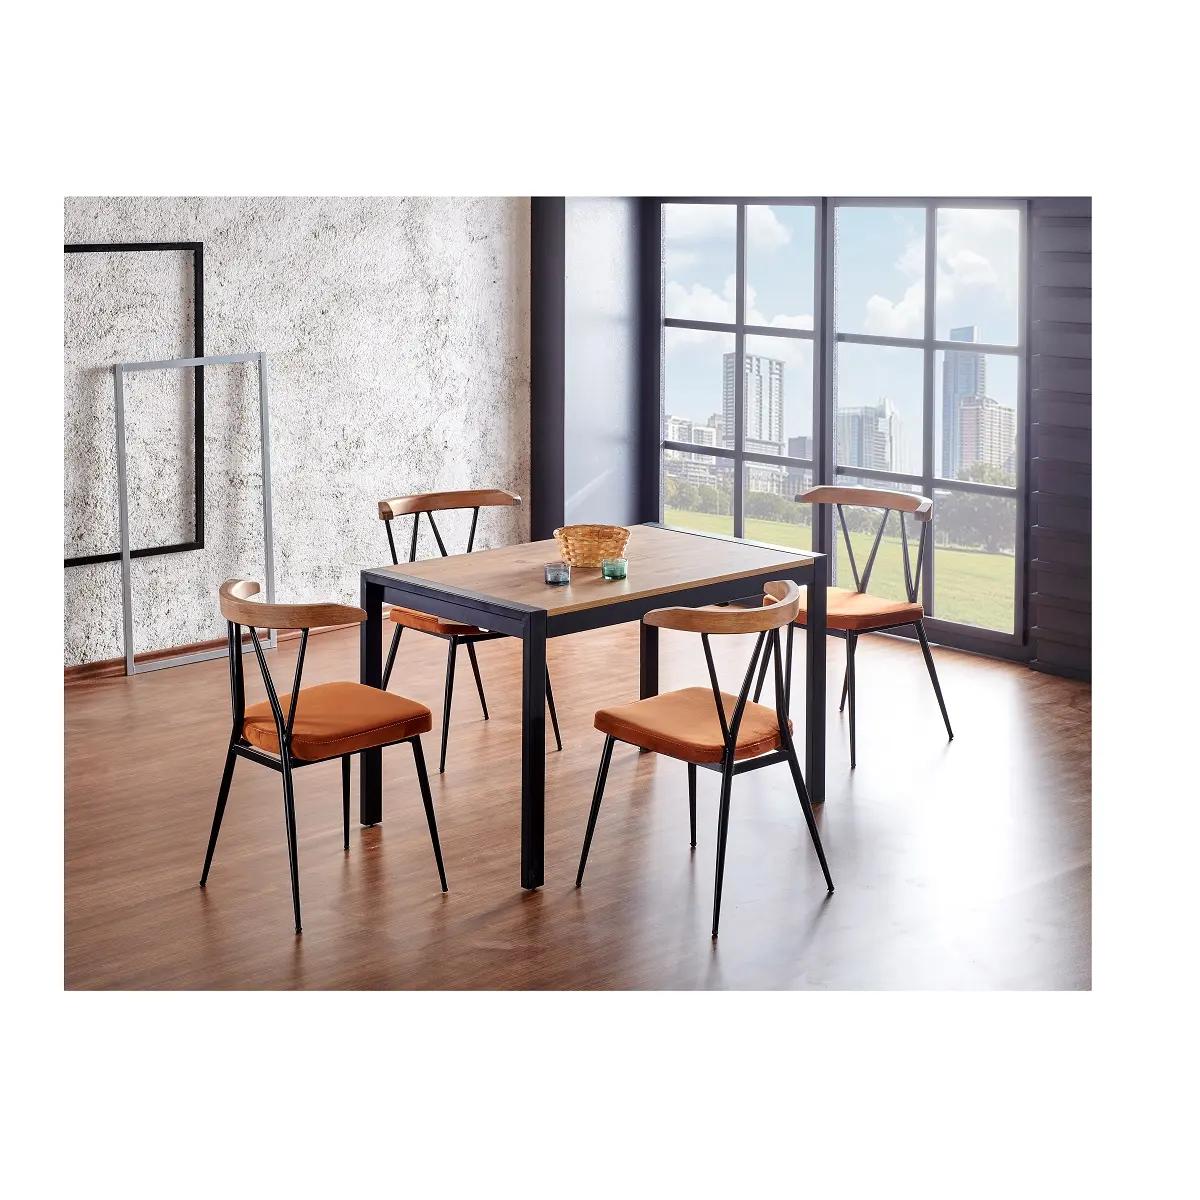 ผลิตโดยโต๊ะและเก้าอี้รับประทานอาหารสไตล์ตุรกี,เก้าอี้โซฟาหนังเก้าอี้รับประทานอาหารทำจากไม้